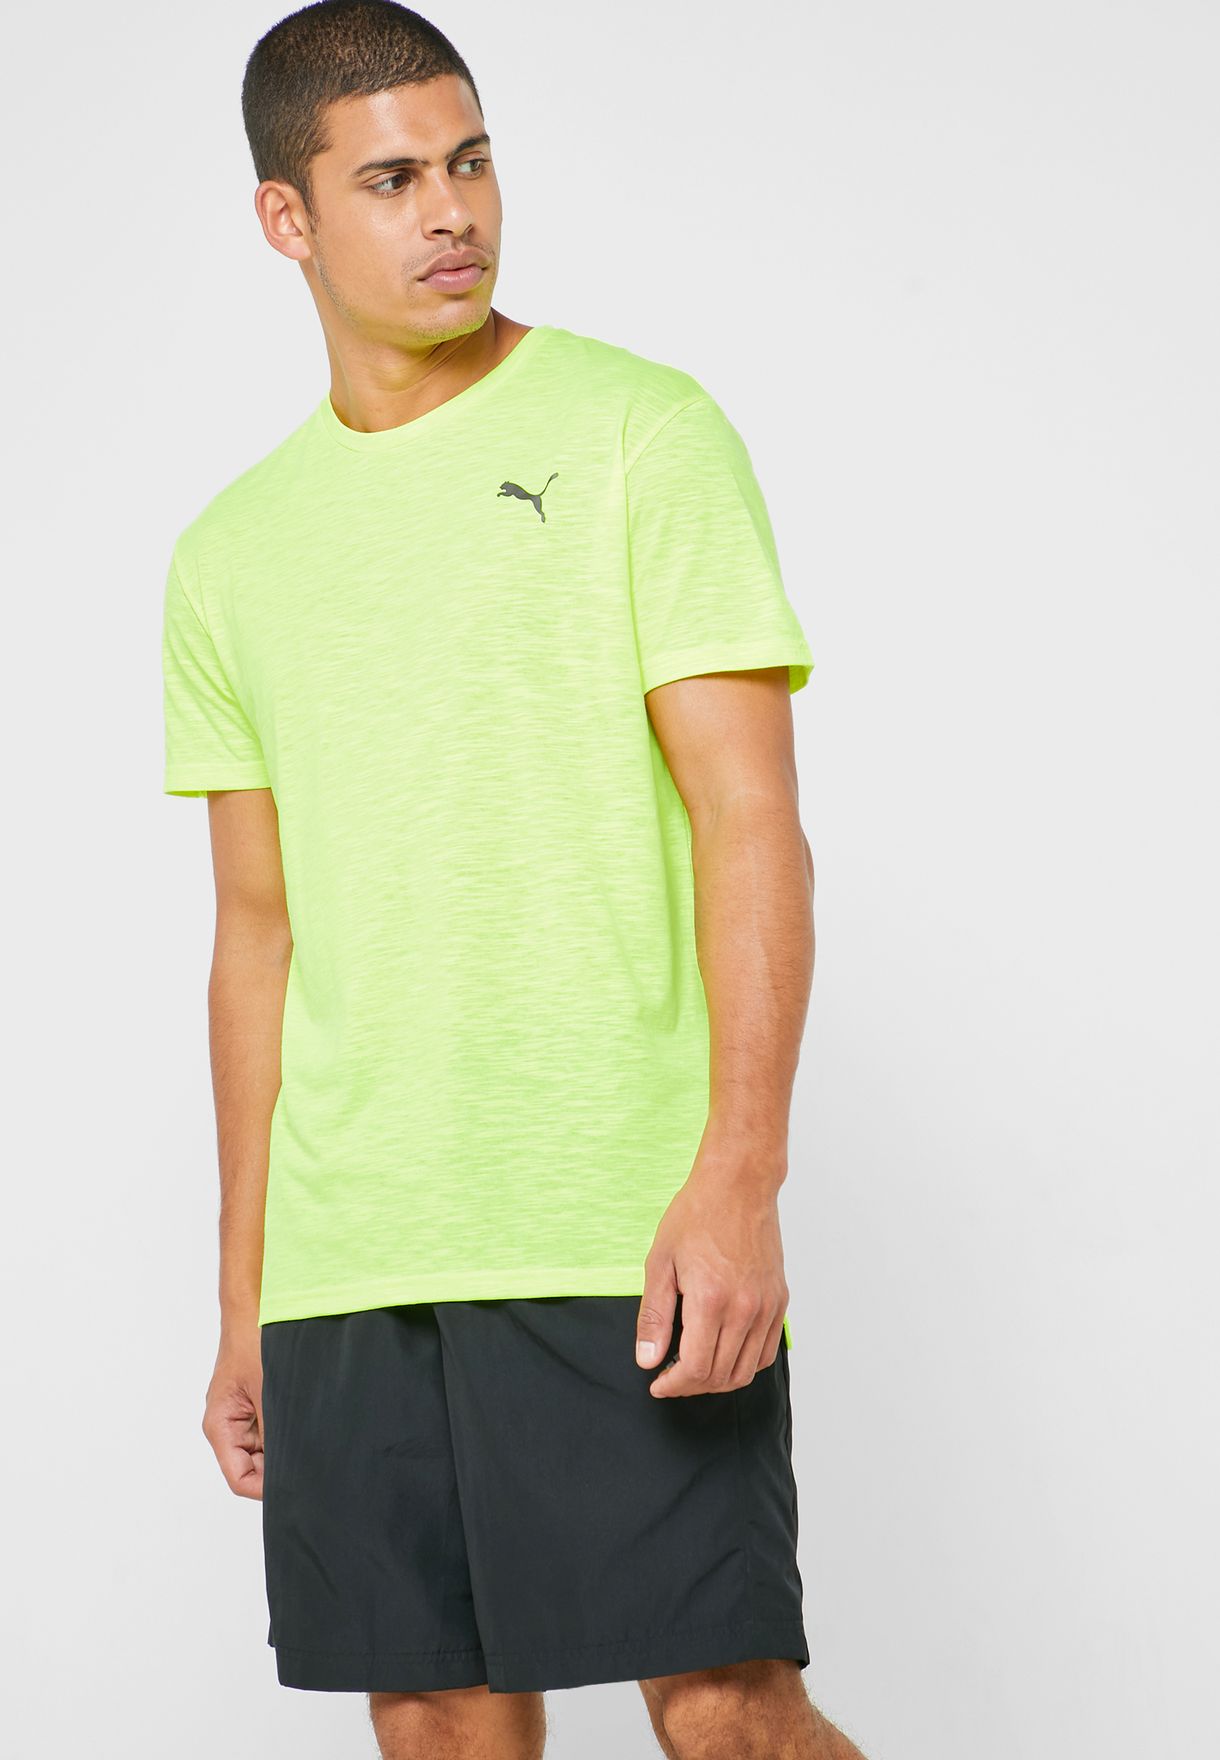 puma neon shirt